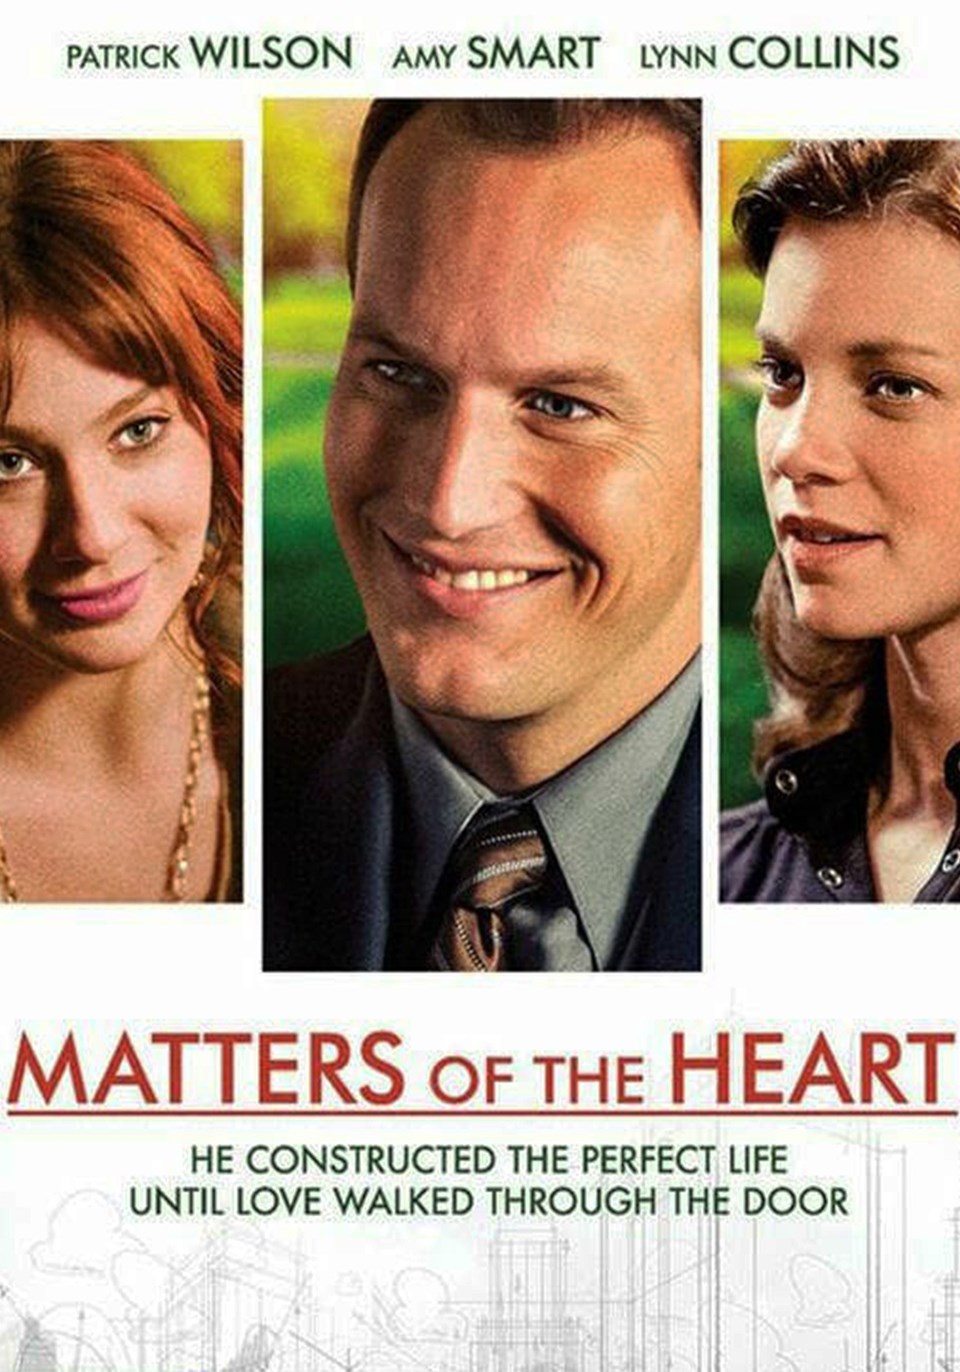 puhutv'den günün filmi: Bir Aşk Meselesi (Matters of the Heart) - 1